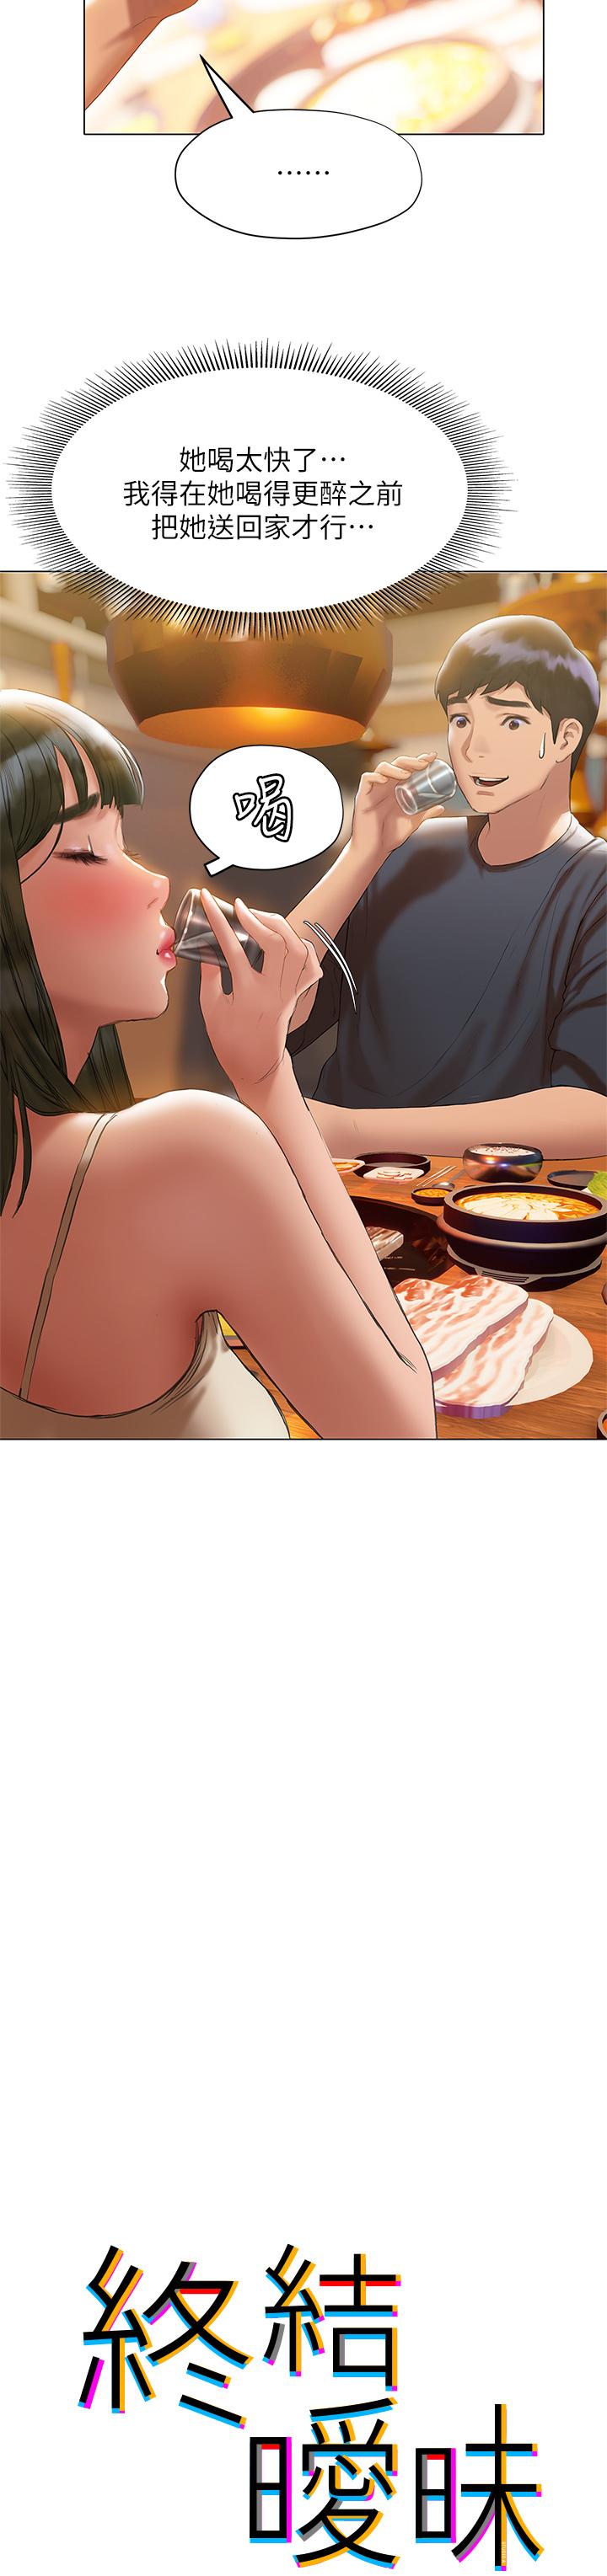 The image Understanding Of Flirting Raw - Chapter 17 - 837214 - ManhwaManga.io